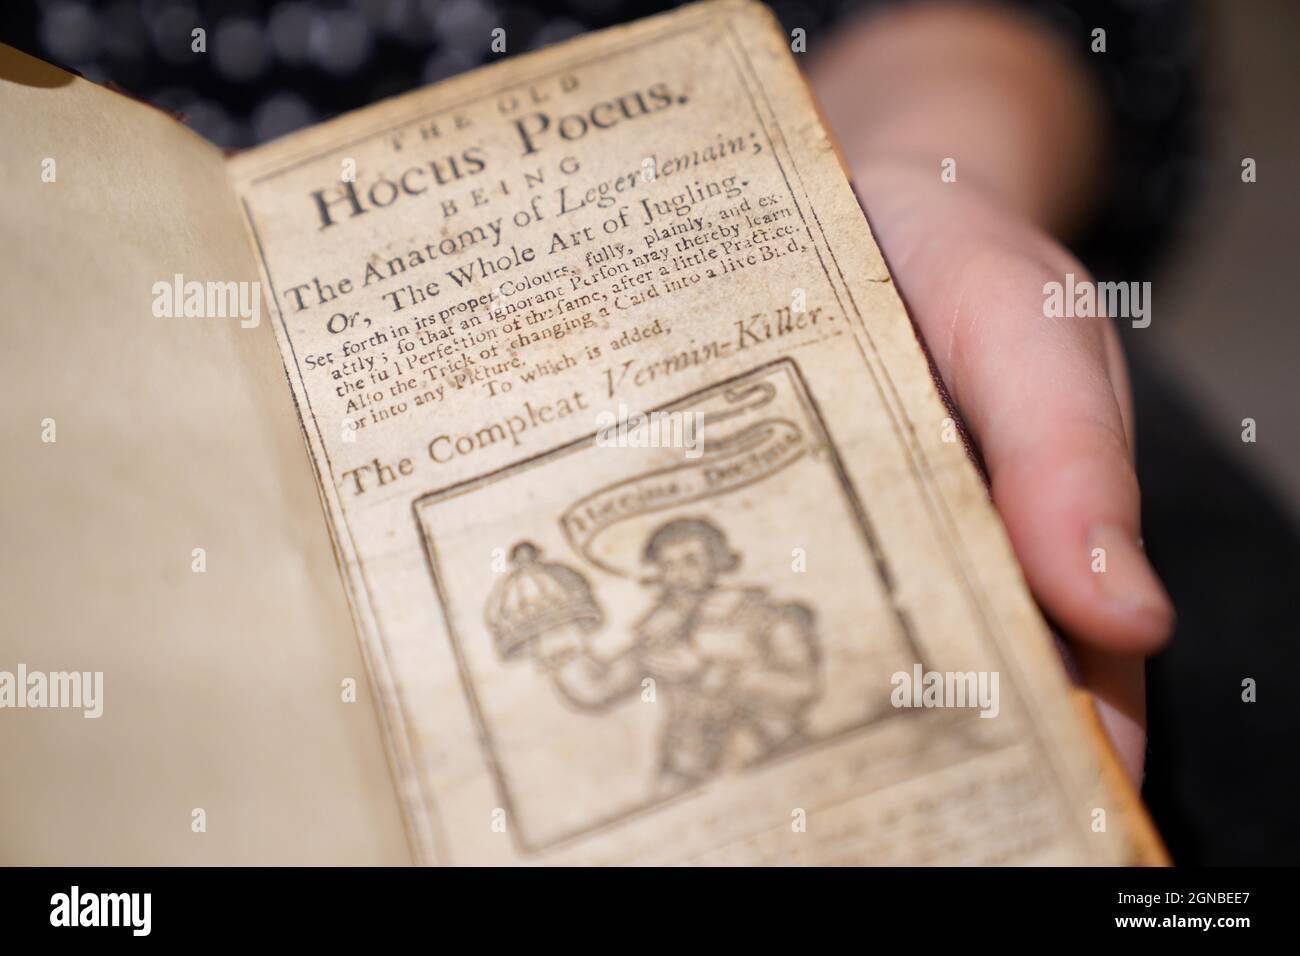 Ein Mitarbeiter von Sothebys Auktionshaus mit dem Buch Hocus Pocus Junior, das Teil einer Sammlung von Gegenständen des berühmten Zauberers Ricky Jay ist und am 27. Und 28. Oktober bei Sotheby's in New York unter den Hammer gehen wird. Bilddatum: Freitag, 24. September 2021. Die Sammlung umfasst frühe und seltene Bücher über Magie, eine Fundgrube von Harry Houdini-Postern und Dramatiker aus dem 18. Jahrhundert. Stockfoto